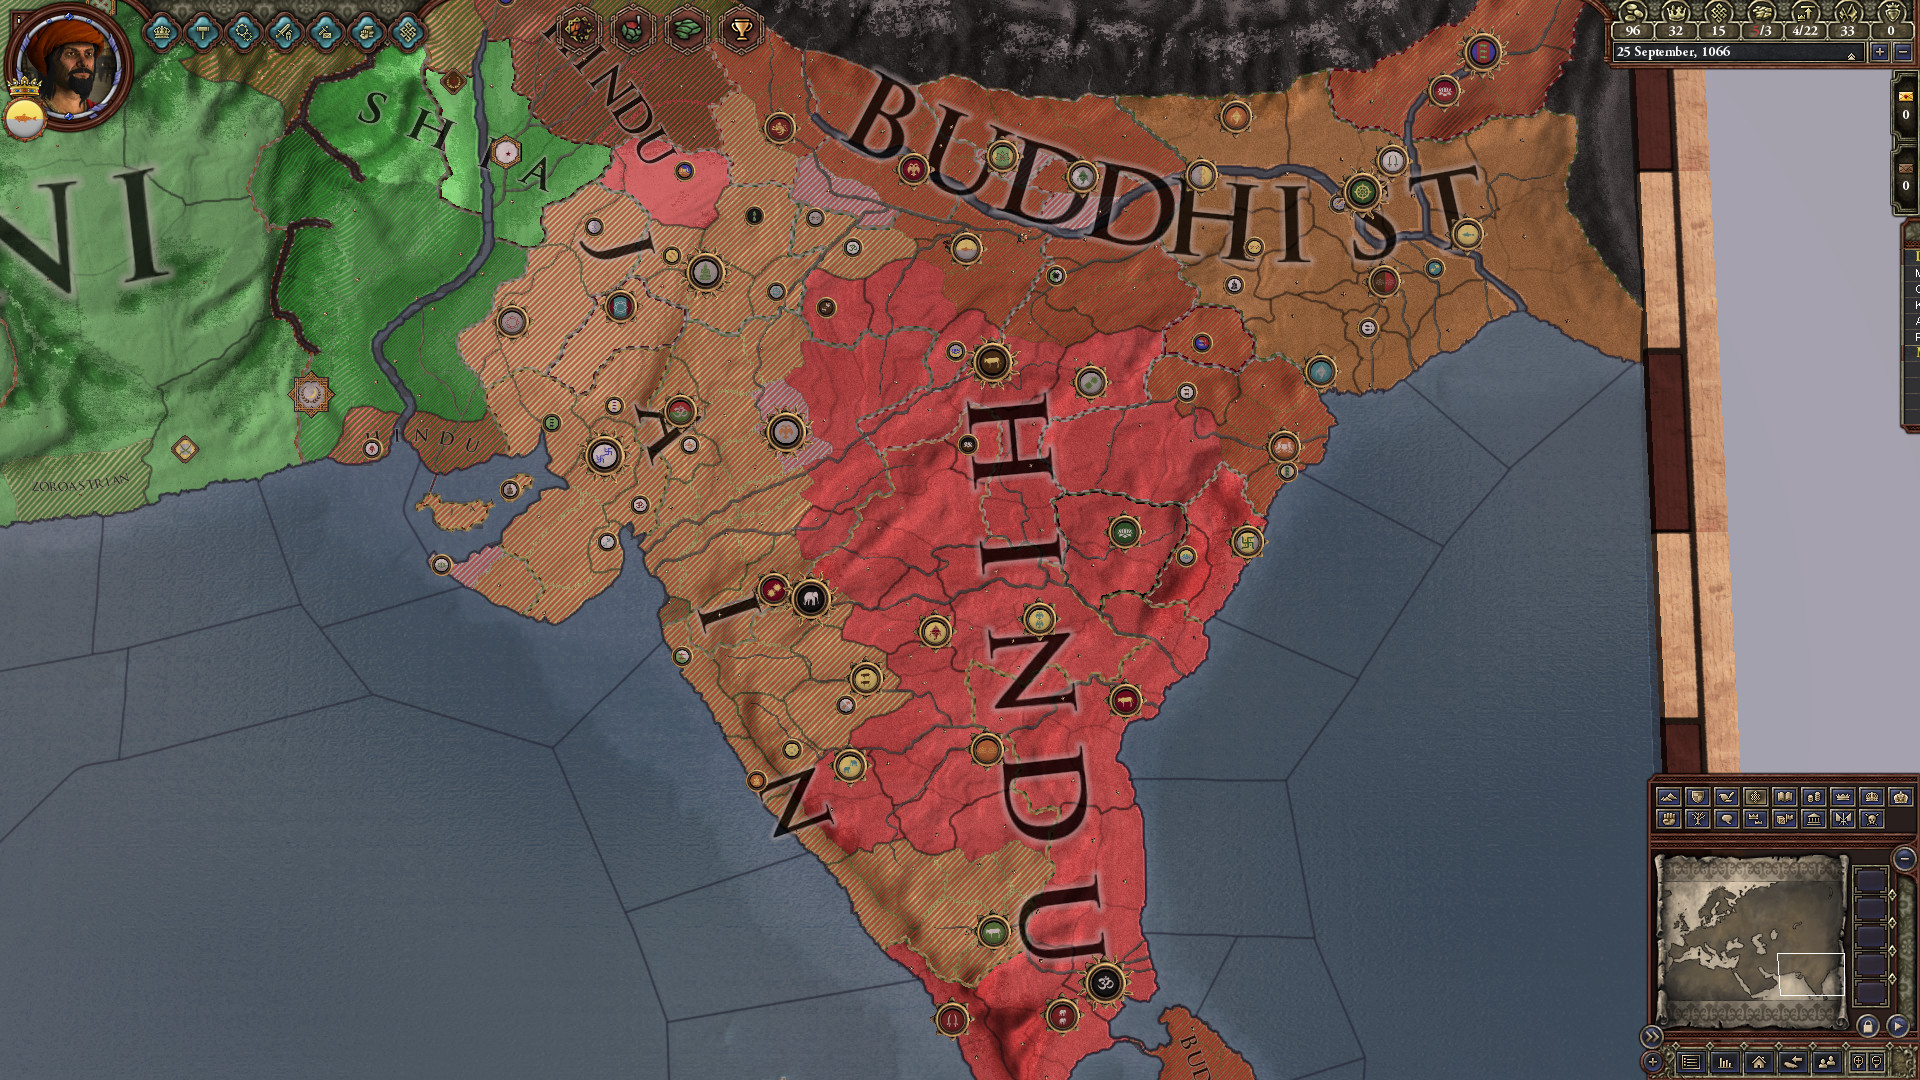 Expansion - Crusader Kings II: Rajas of India screenshot